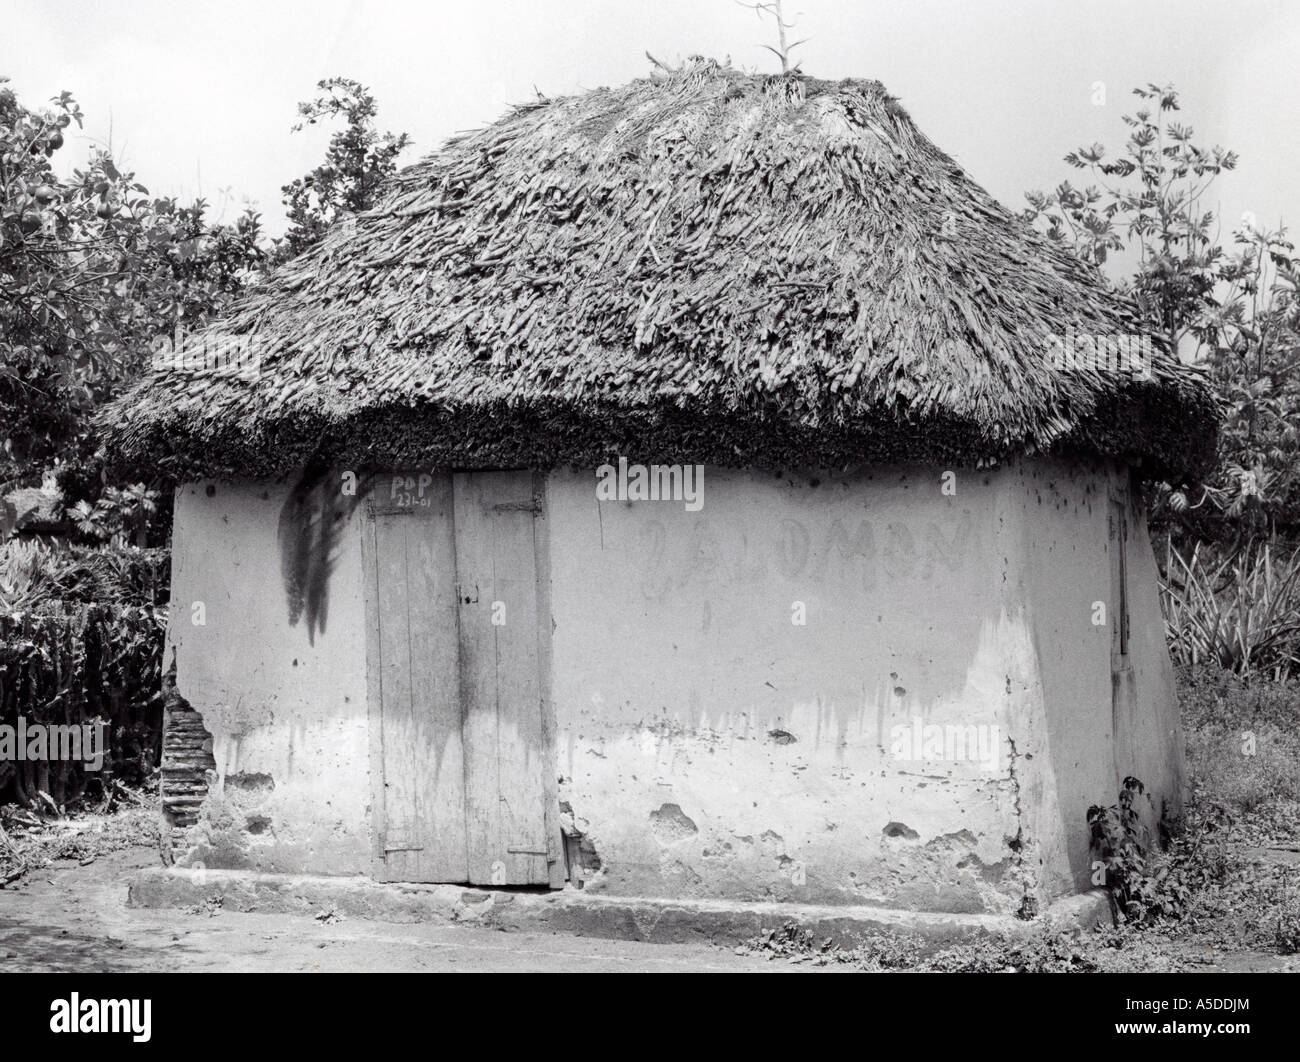 Les Indiens maya typique dans la campagne du Yucatan Mexique Banque D'Images